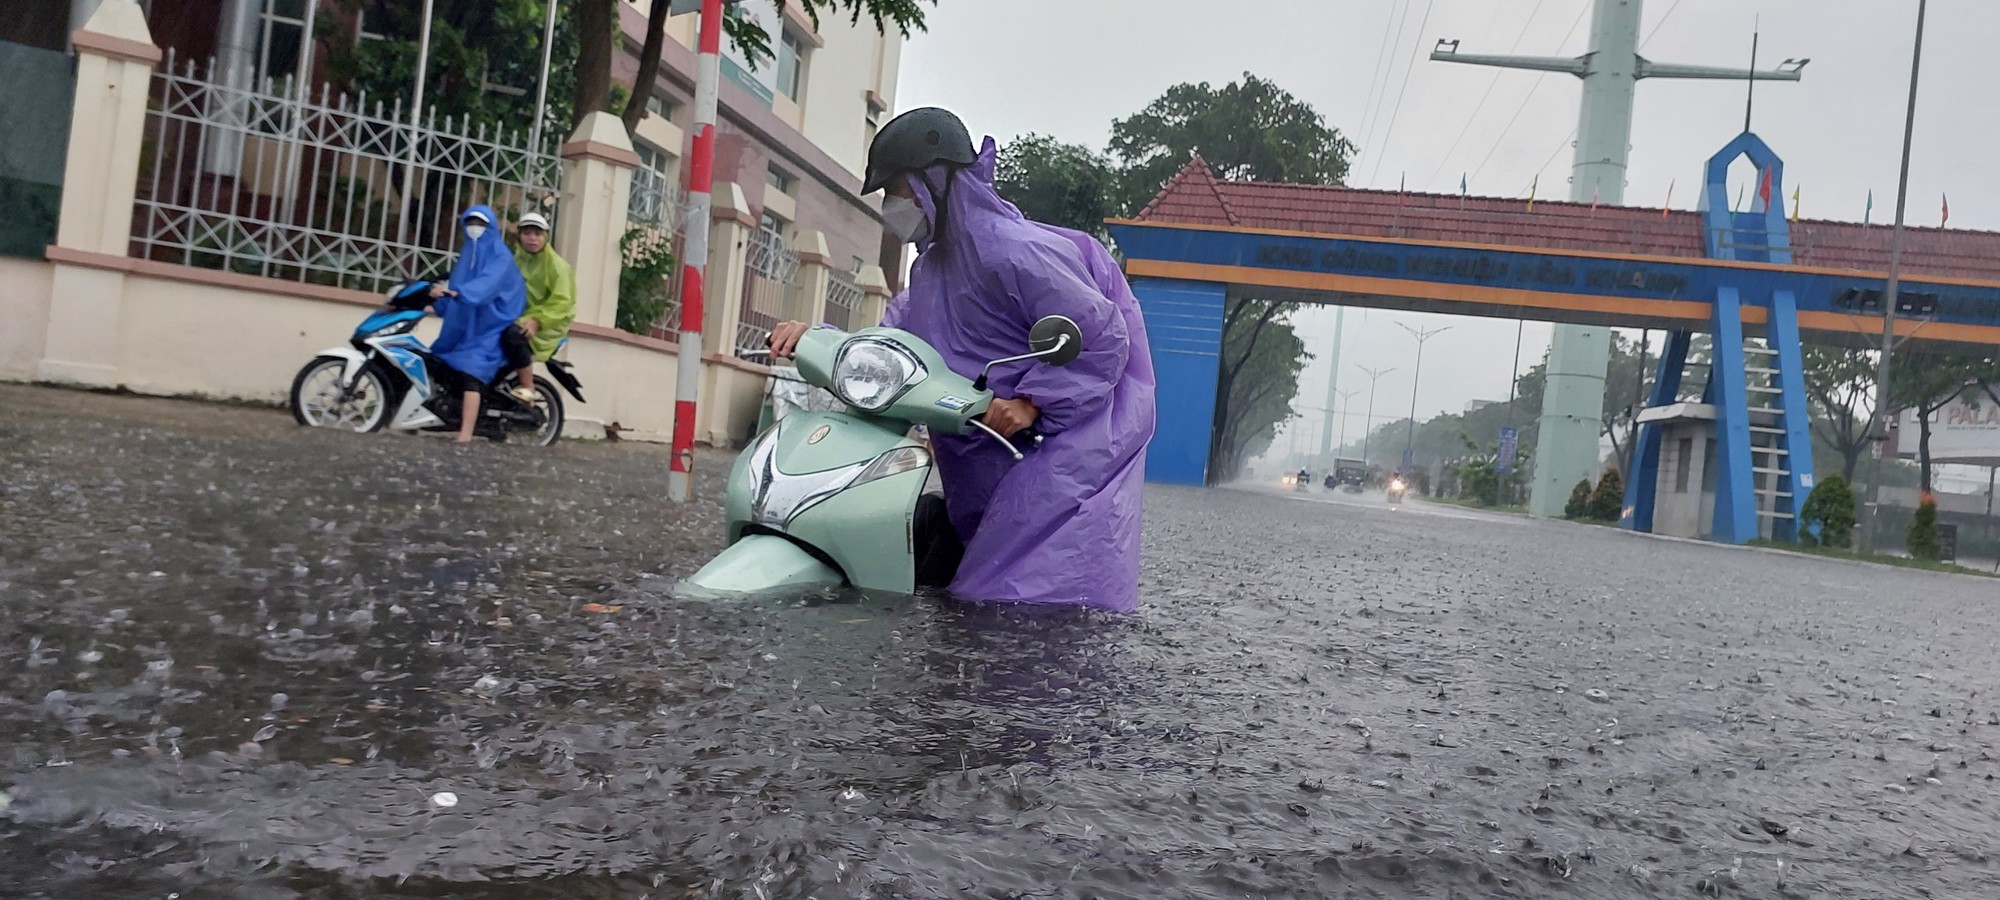 Đường phố Đà Nẵng lại ngập sau mưa lớn, ô tô, xe máy bì bõm lội nước - Ảnh 1.